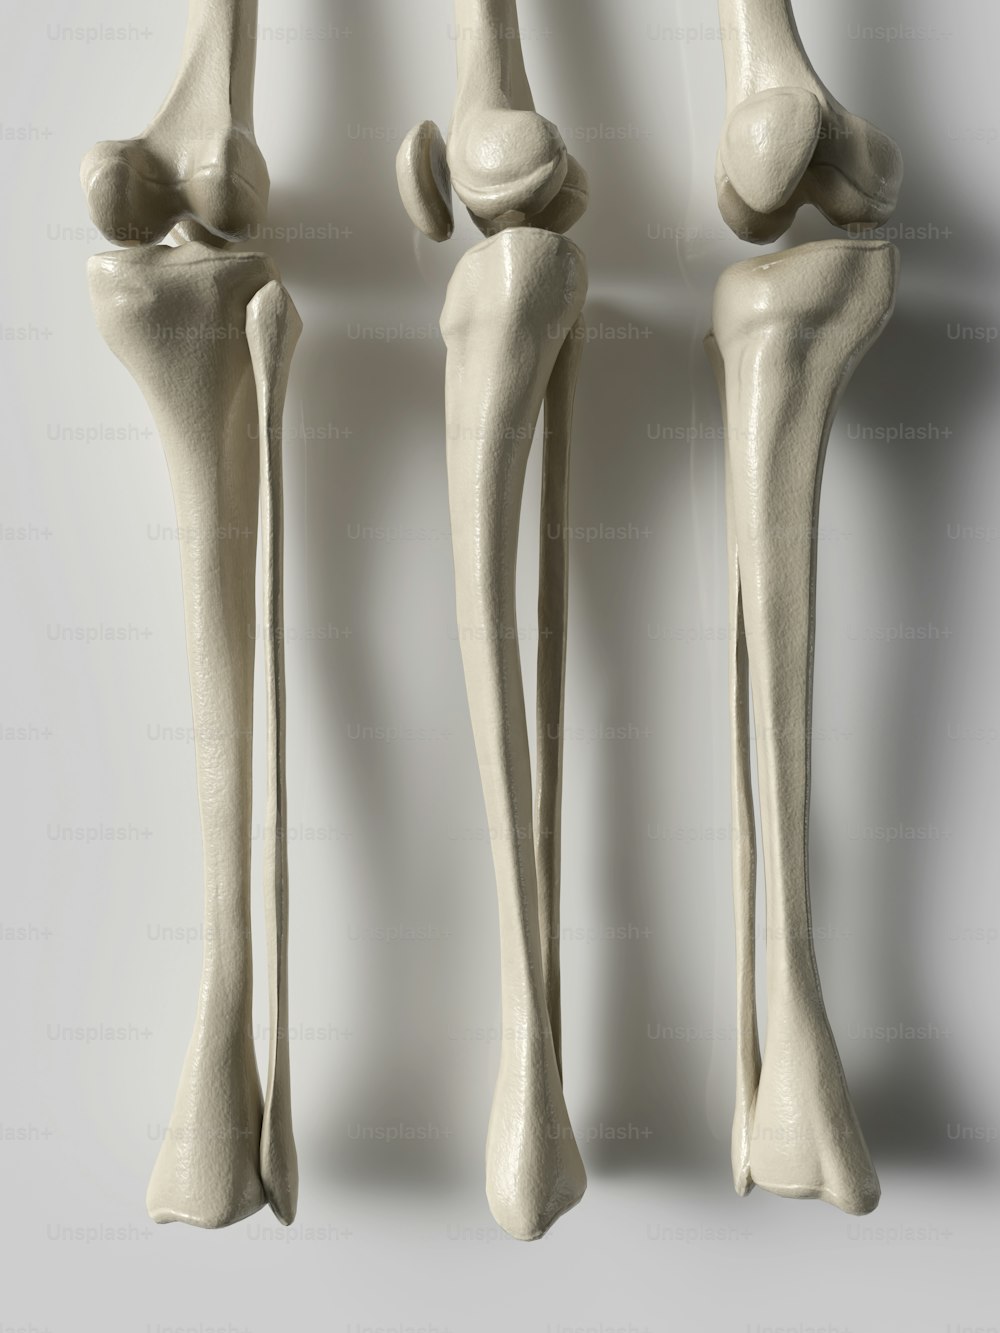 Drei verschiedene Ansichten der Knochen eines Menschen